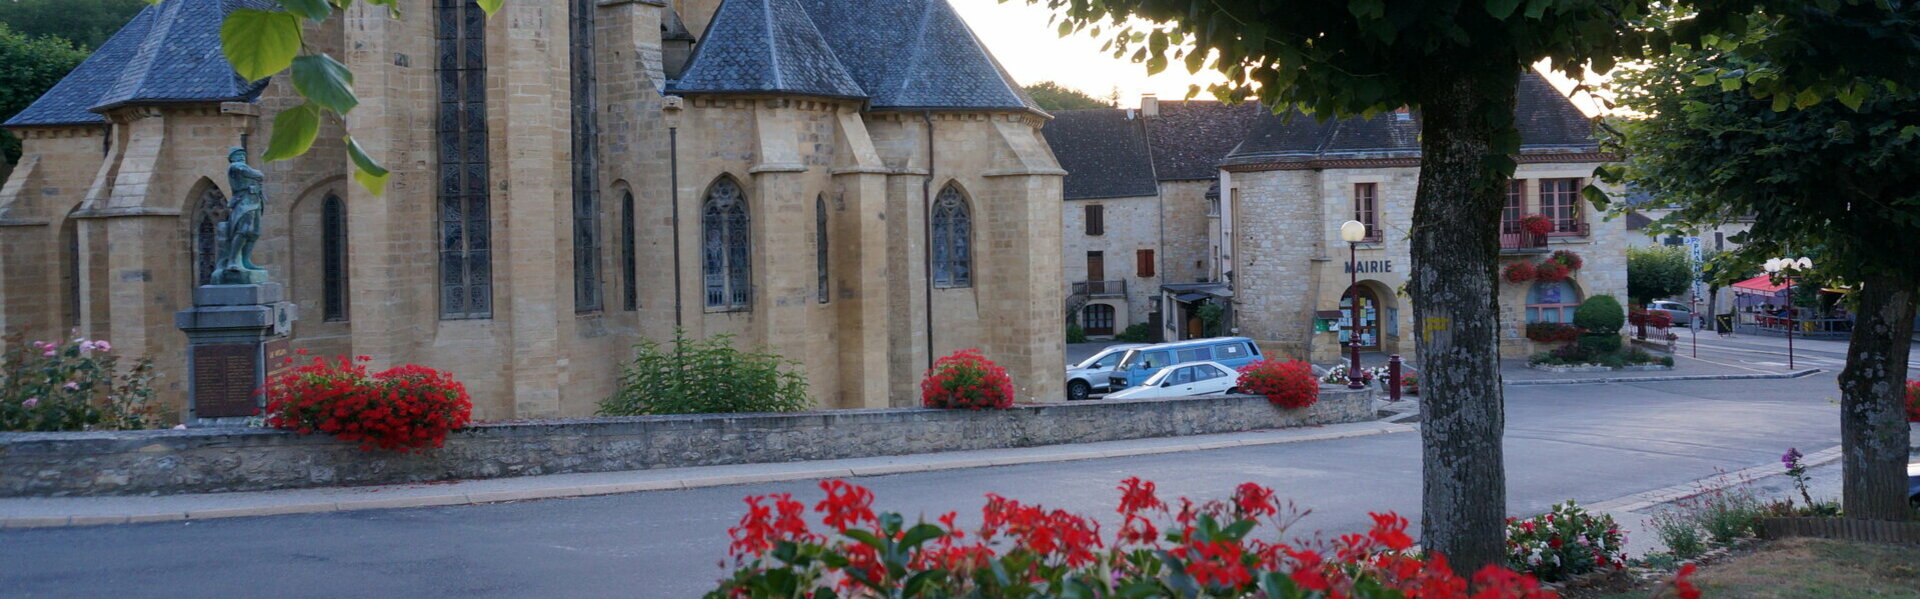 Mairie Commune Municipal Le Vigan Lot Occitanie